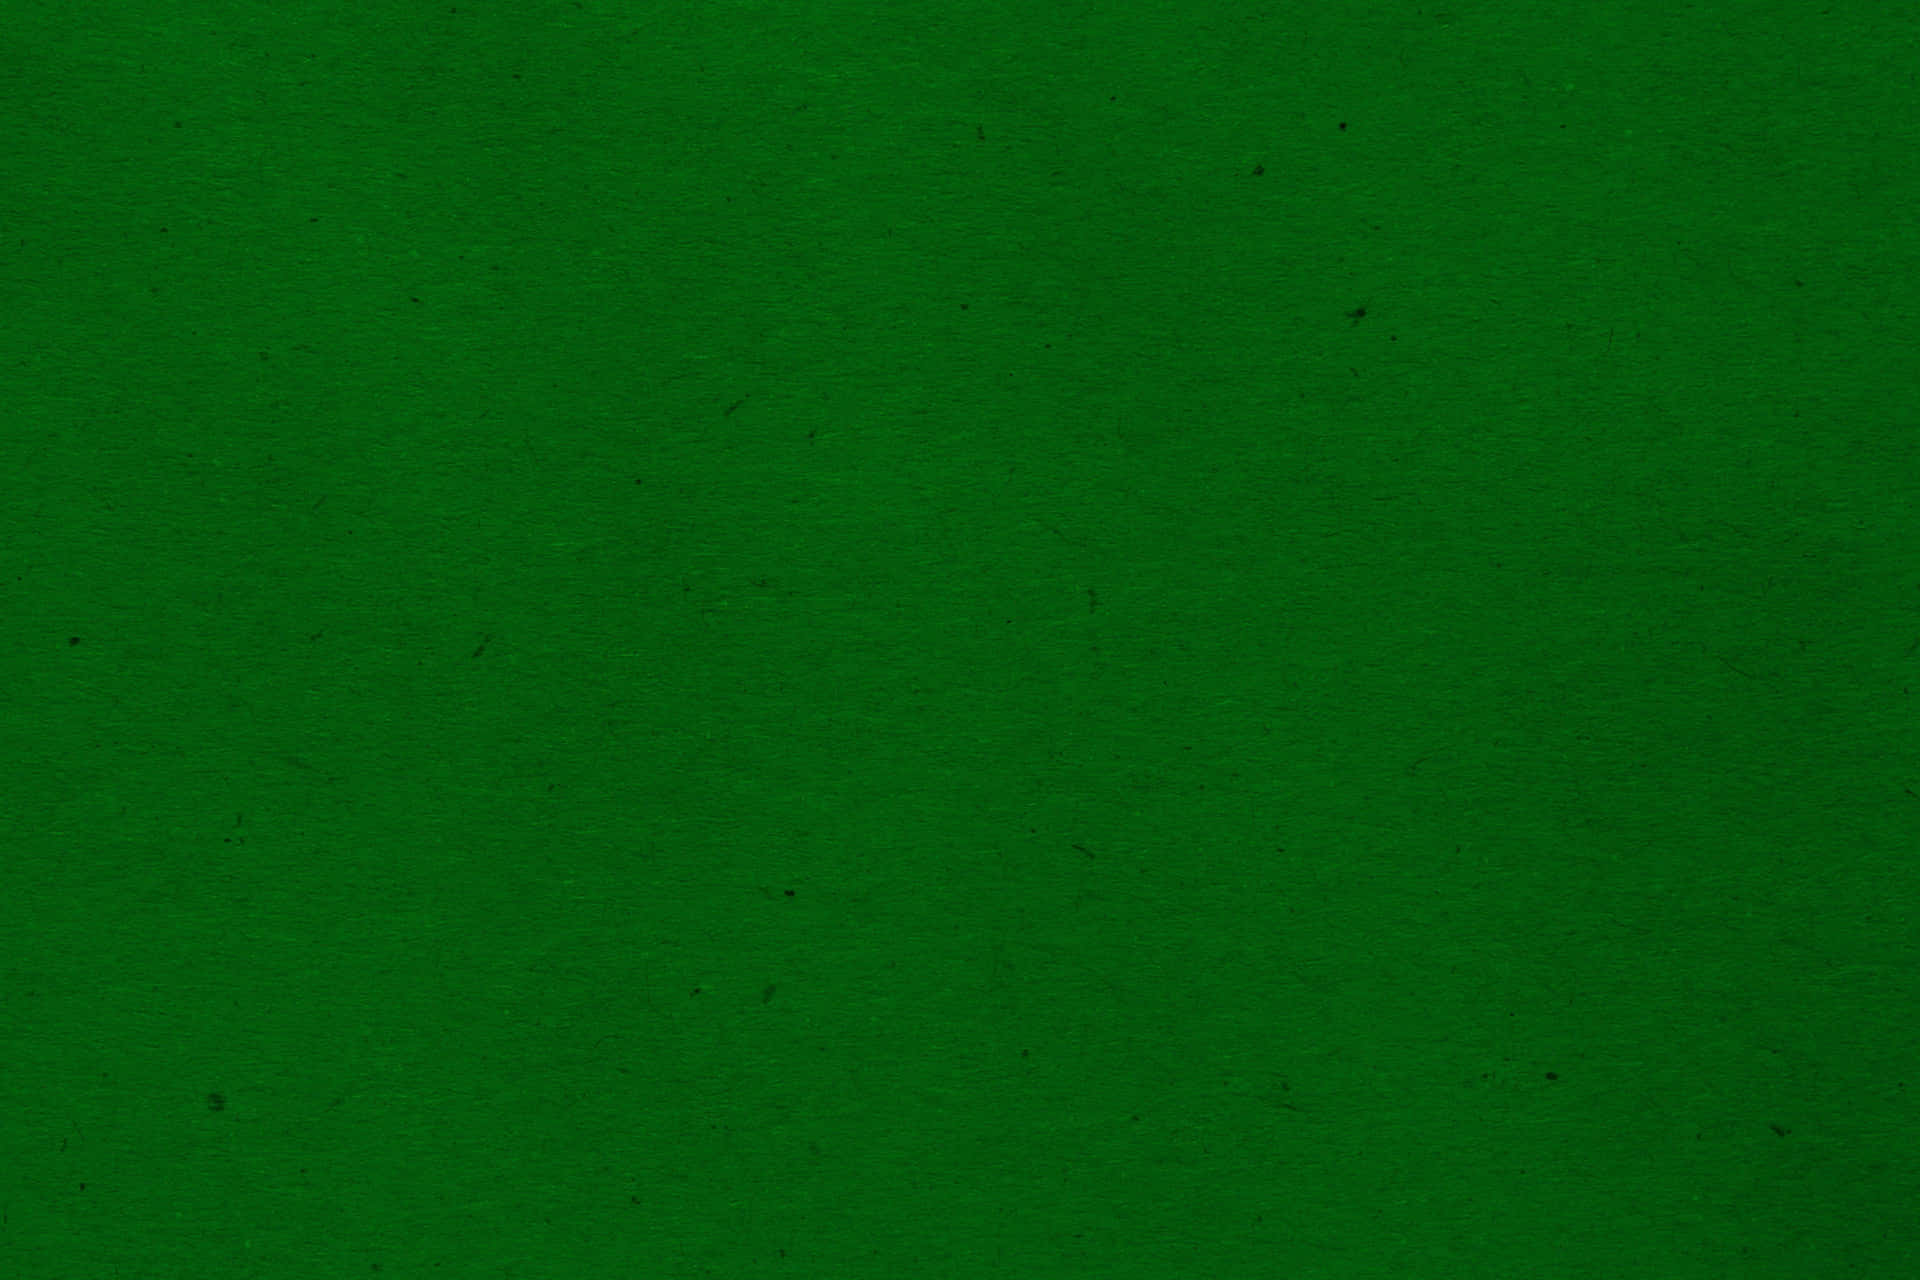 dark green color background images